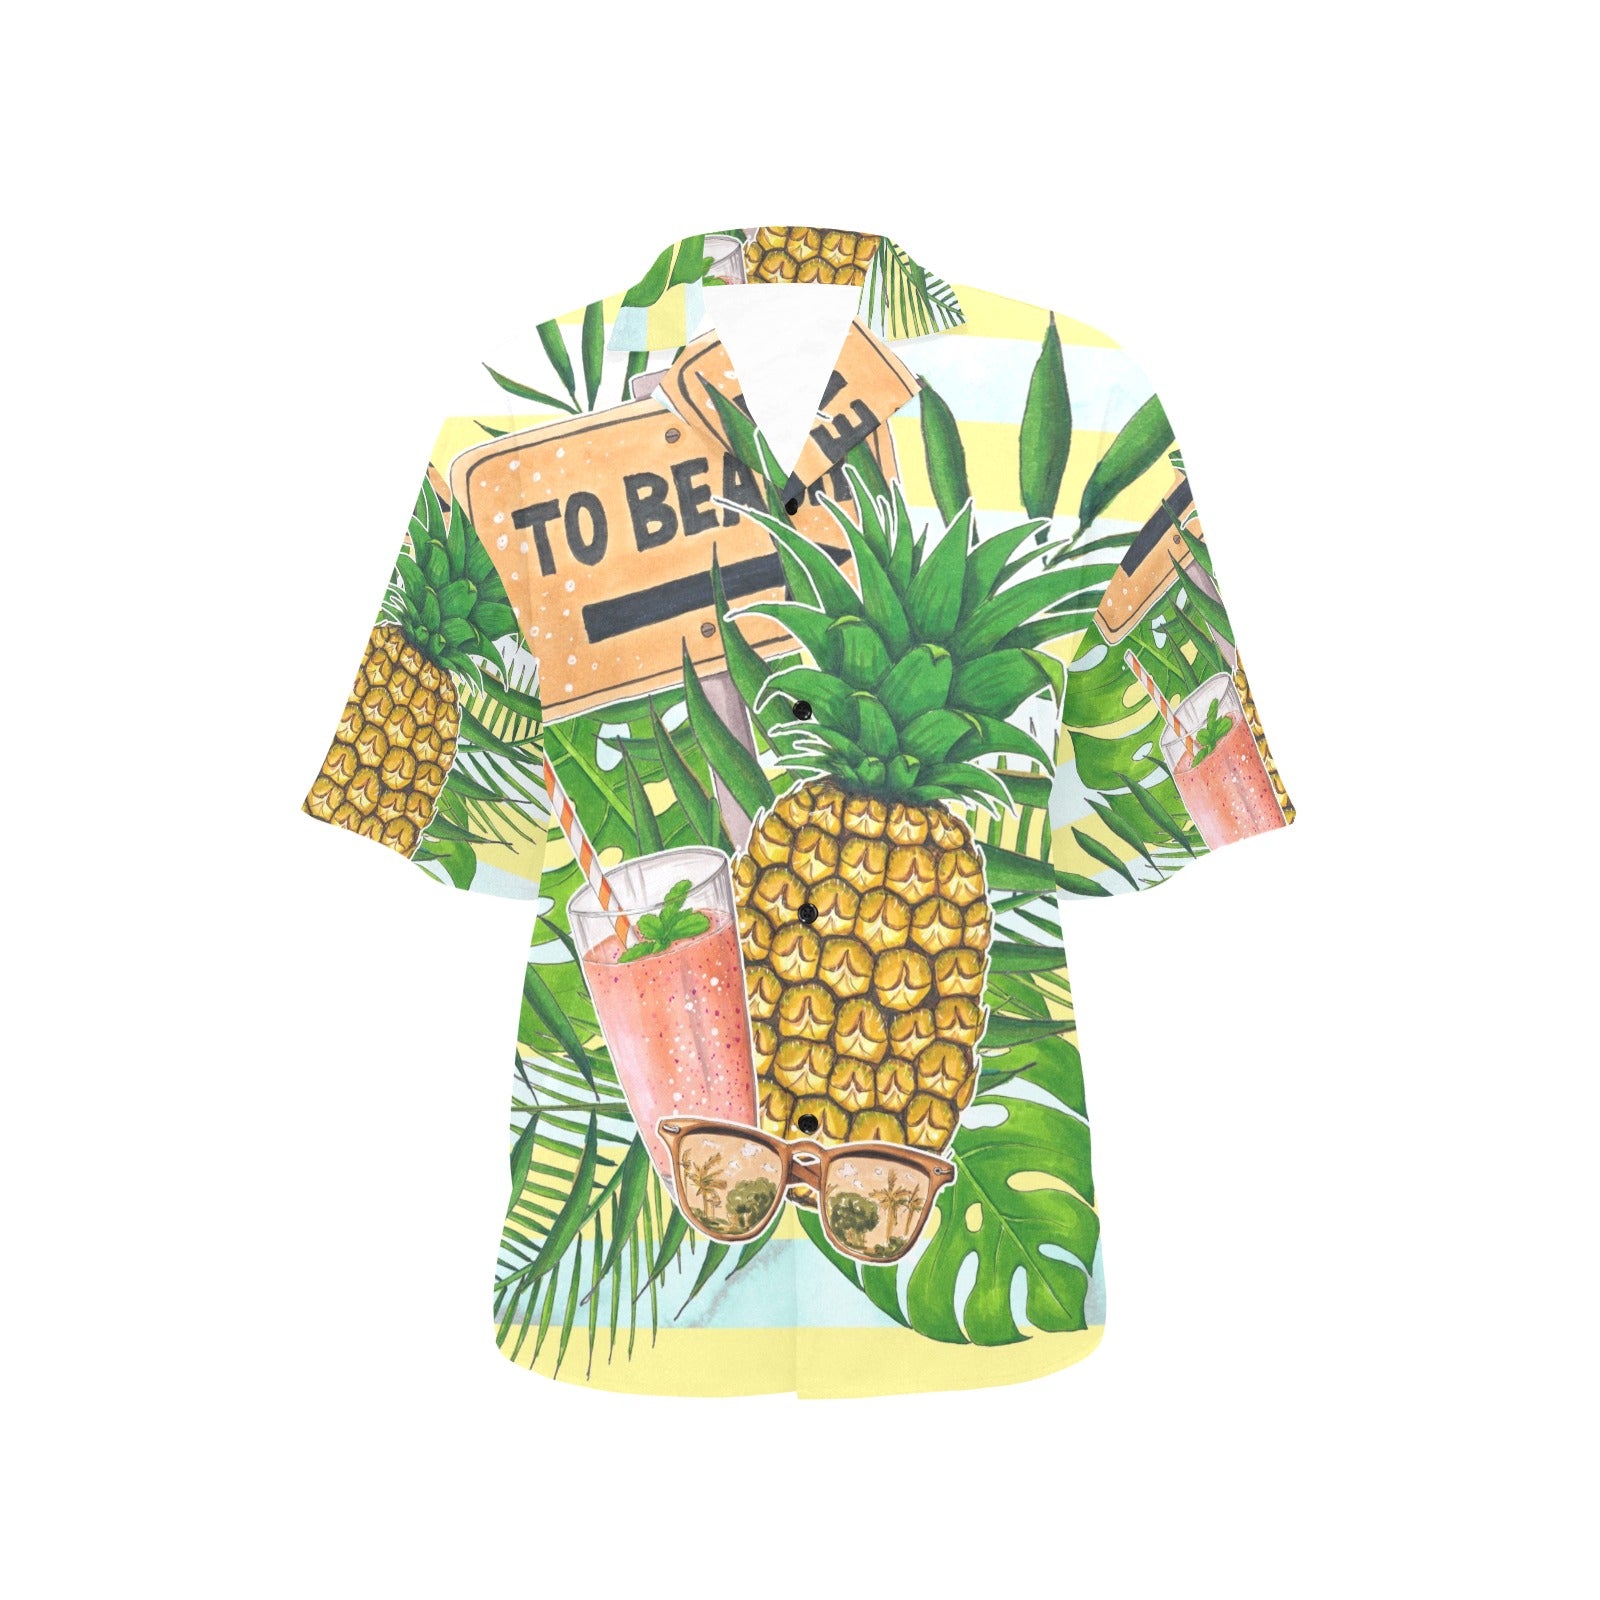 To Beach Hawaiian Shirt for Women - Sport Finesse